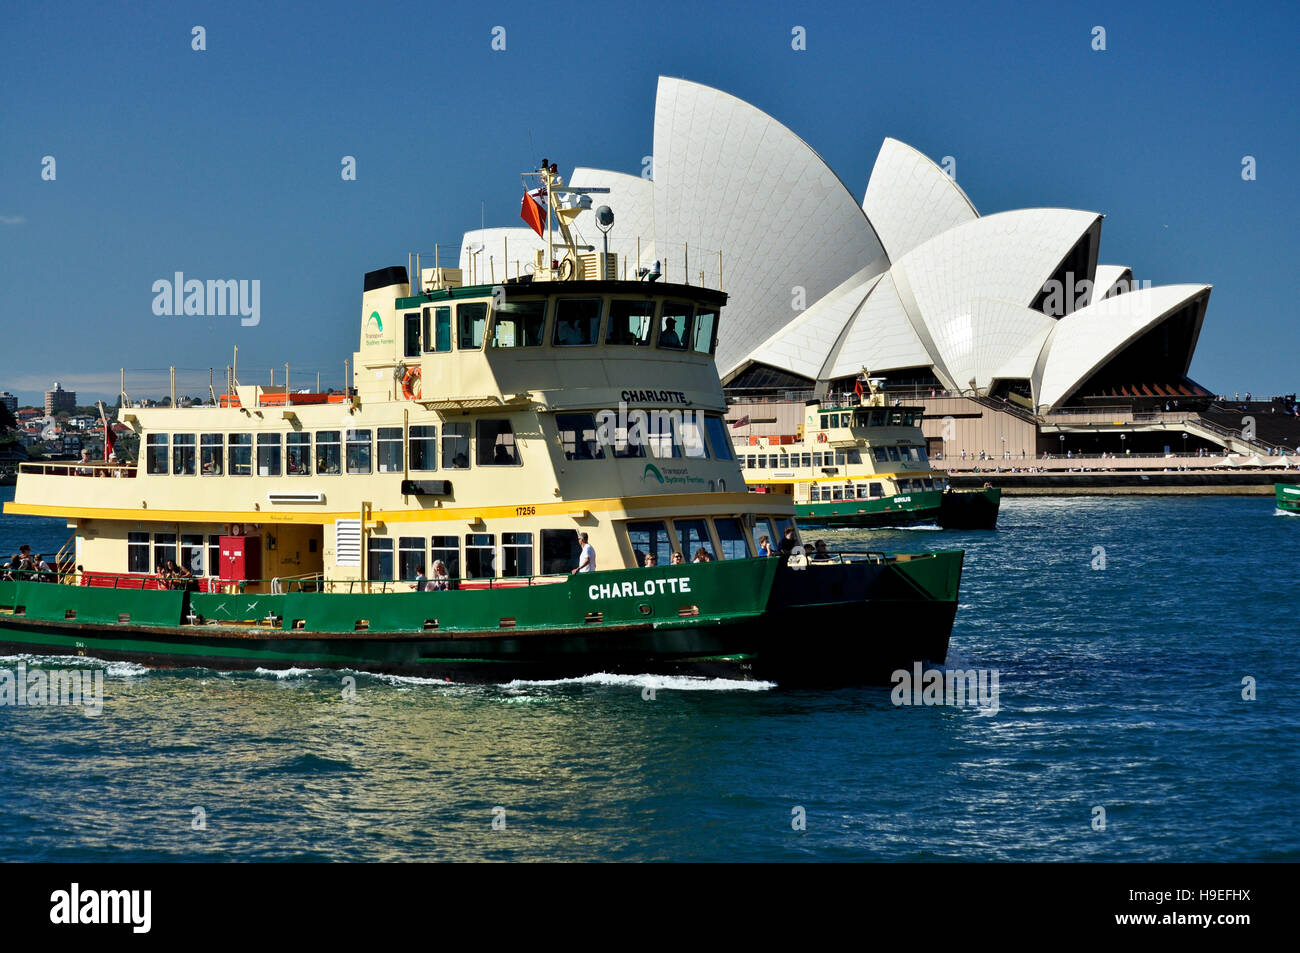 Voyage Tourisme bateaux en face de l'Opéra de Sydney à Sydney, Australie Banque D'Images